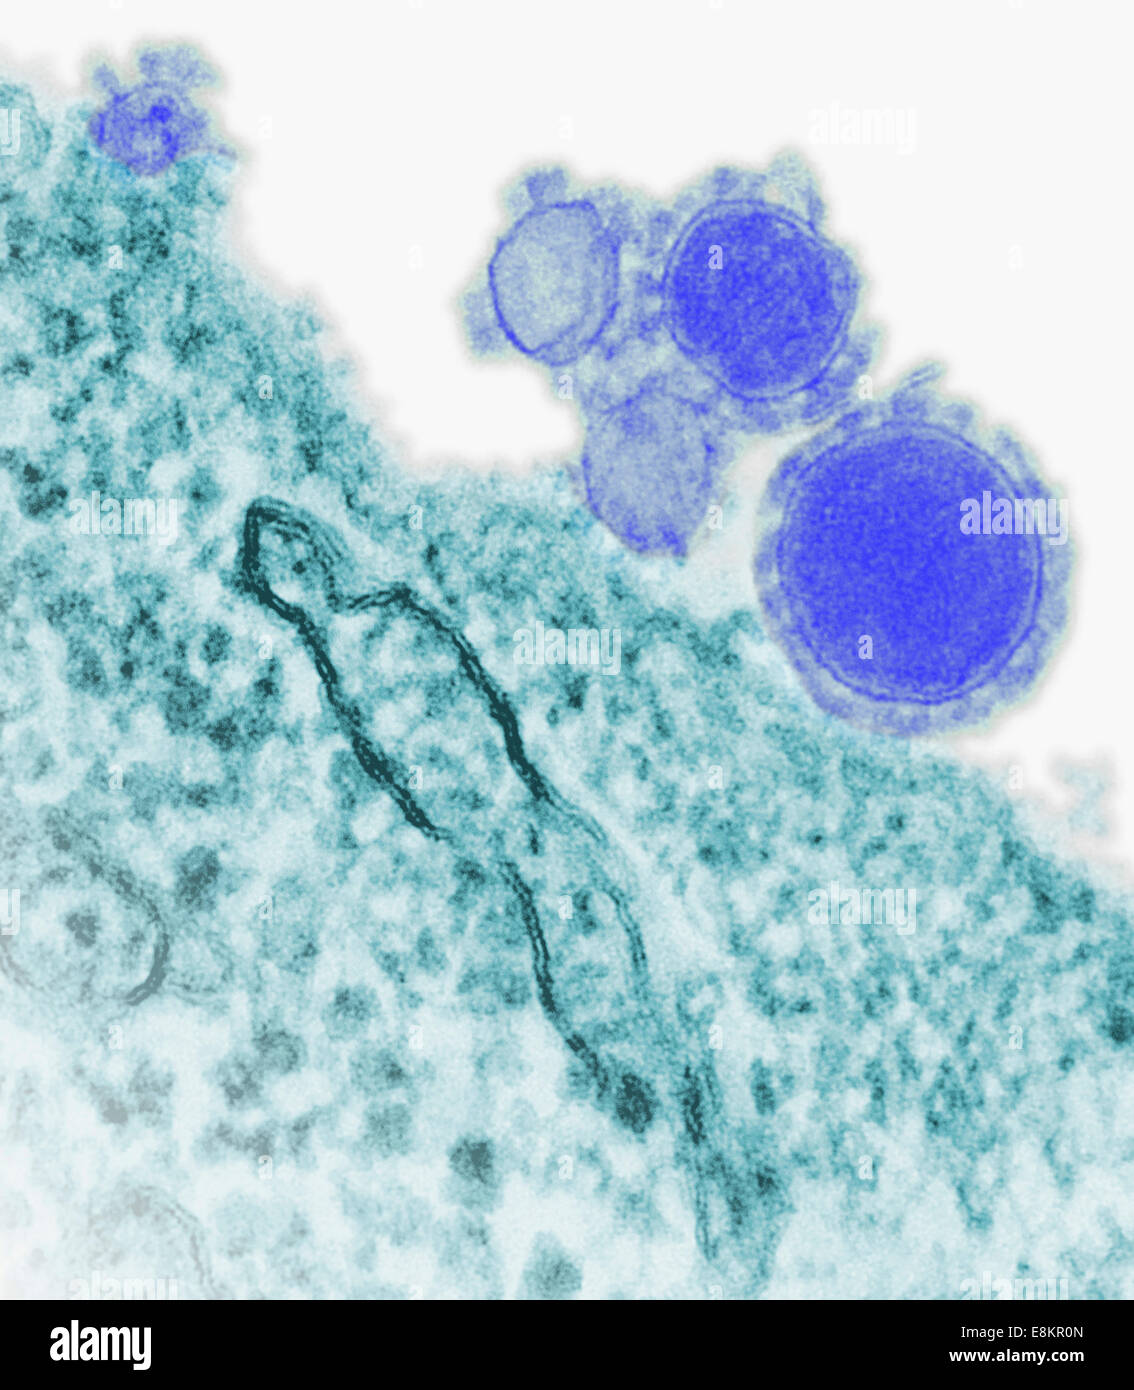 Eingefärbte Übertragung Elektronen Schliffbild des Nahen Osten respiratorisches Syndrom Coronavirus Partikel. Stockfoto